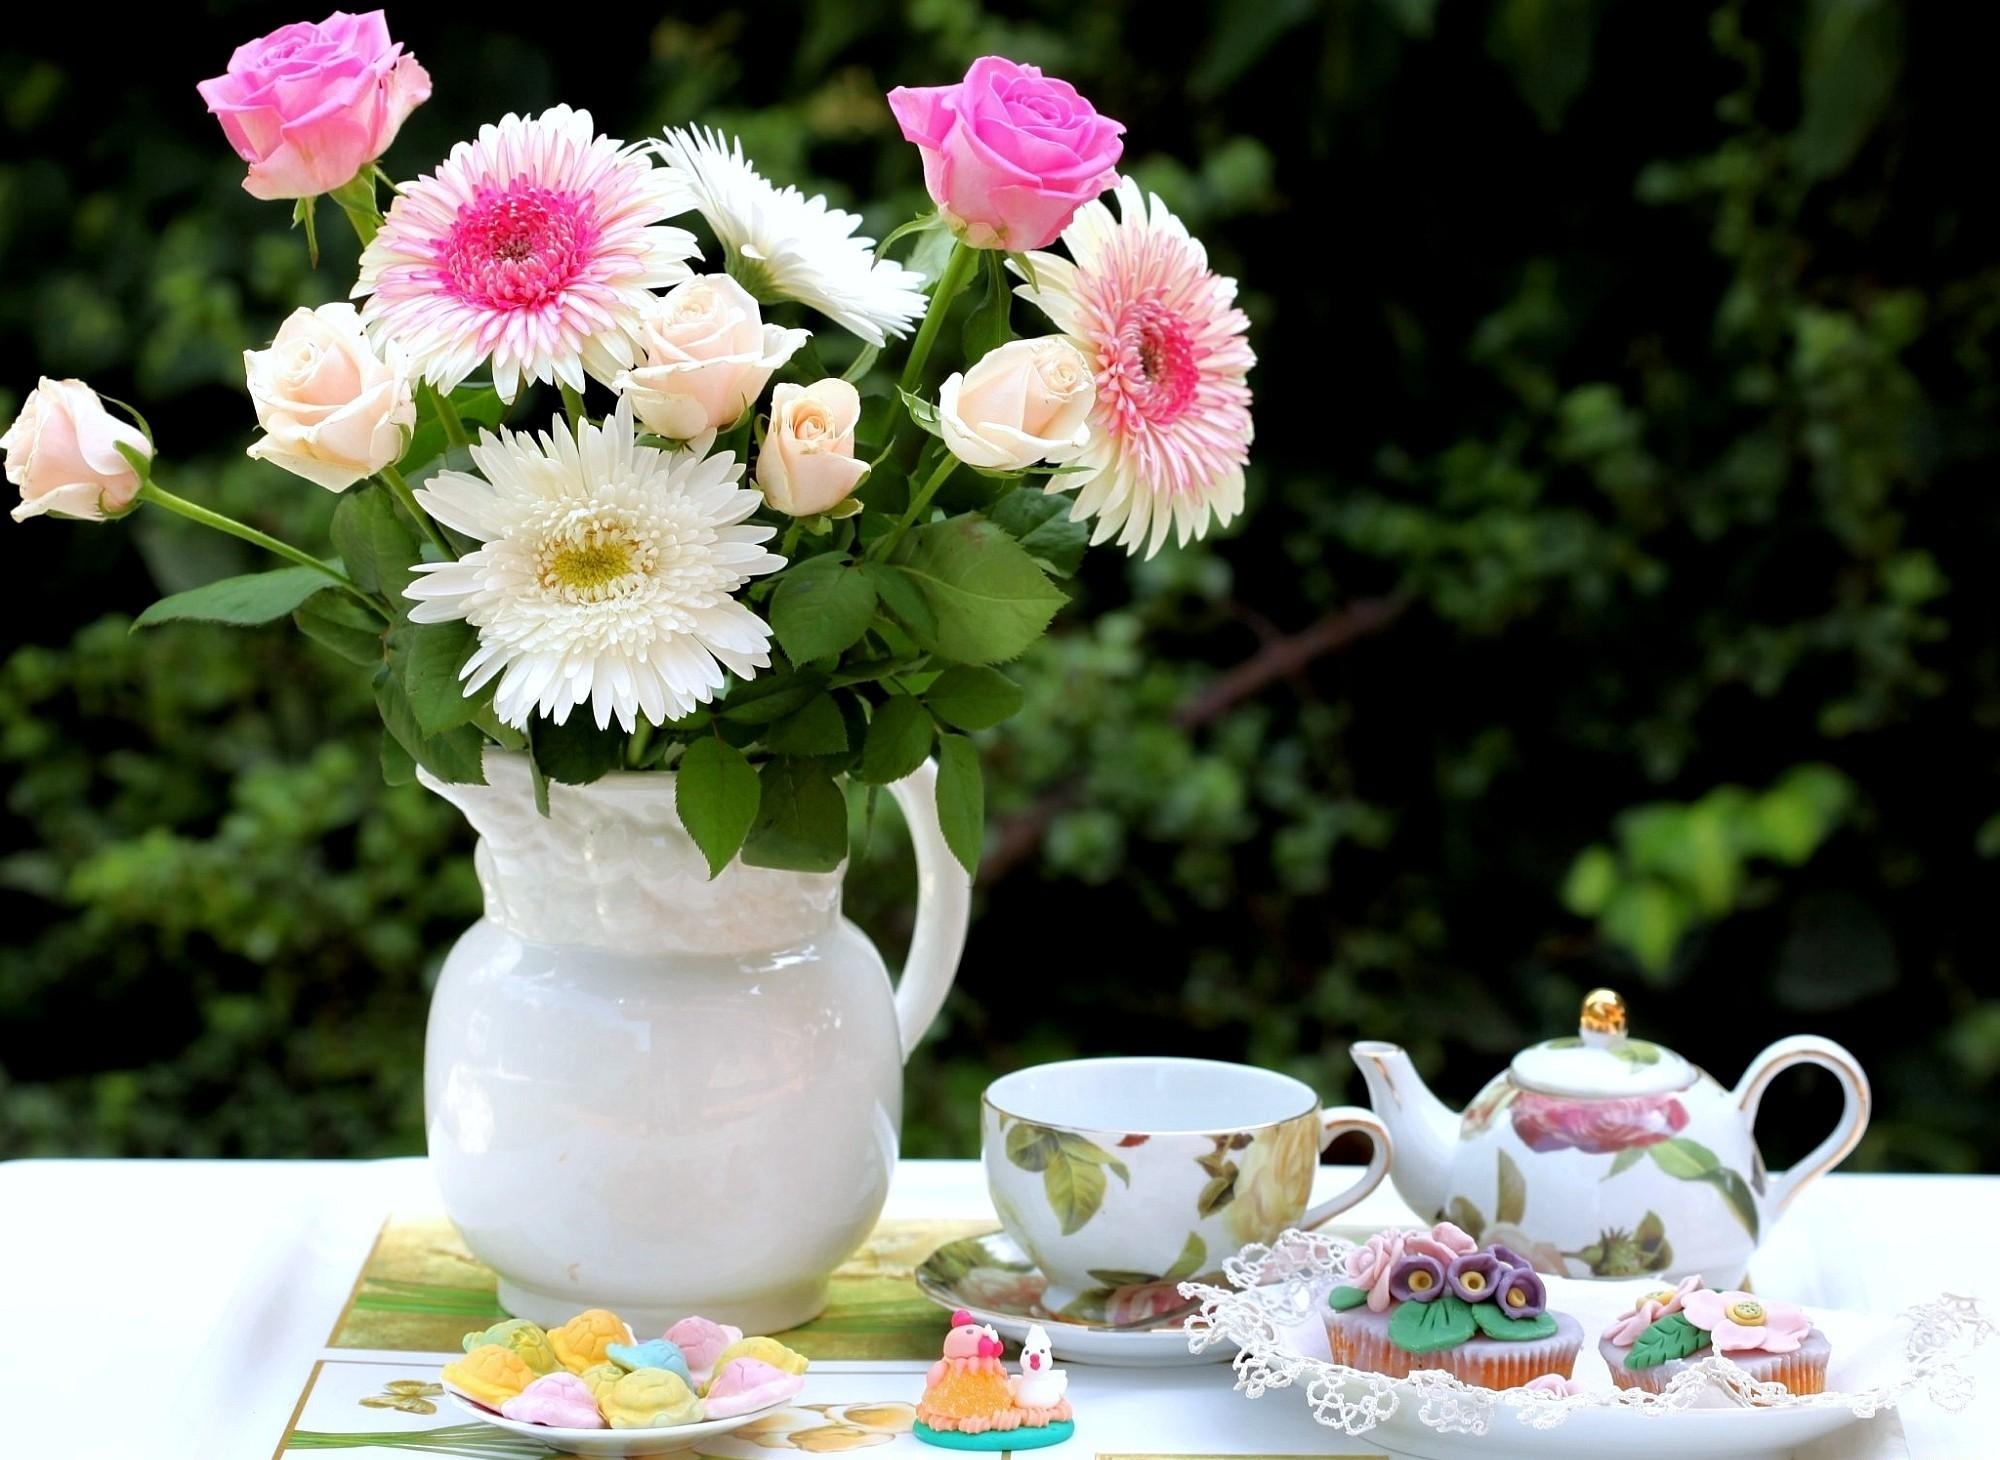 111855 Заставки и Обои Хризантемы на телефон. Скачать чайный сервиз, цветы, угощения, кувшин картинки бесплатно